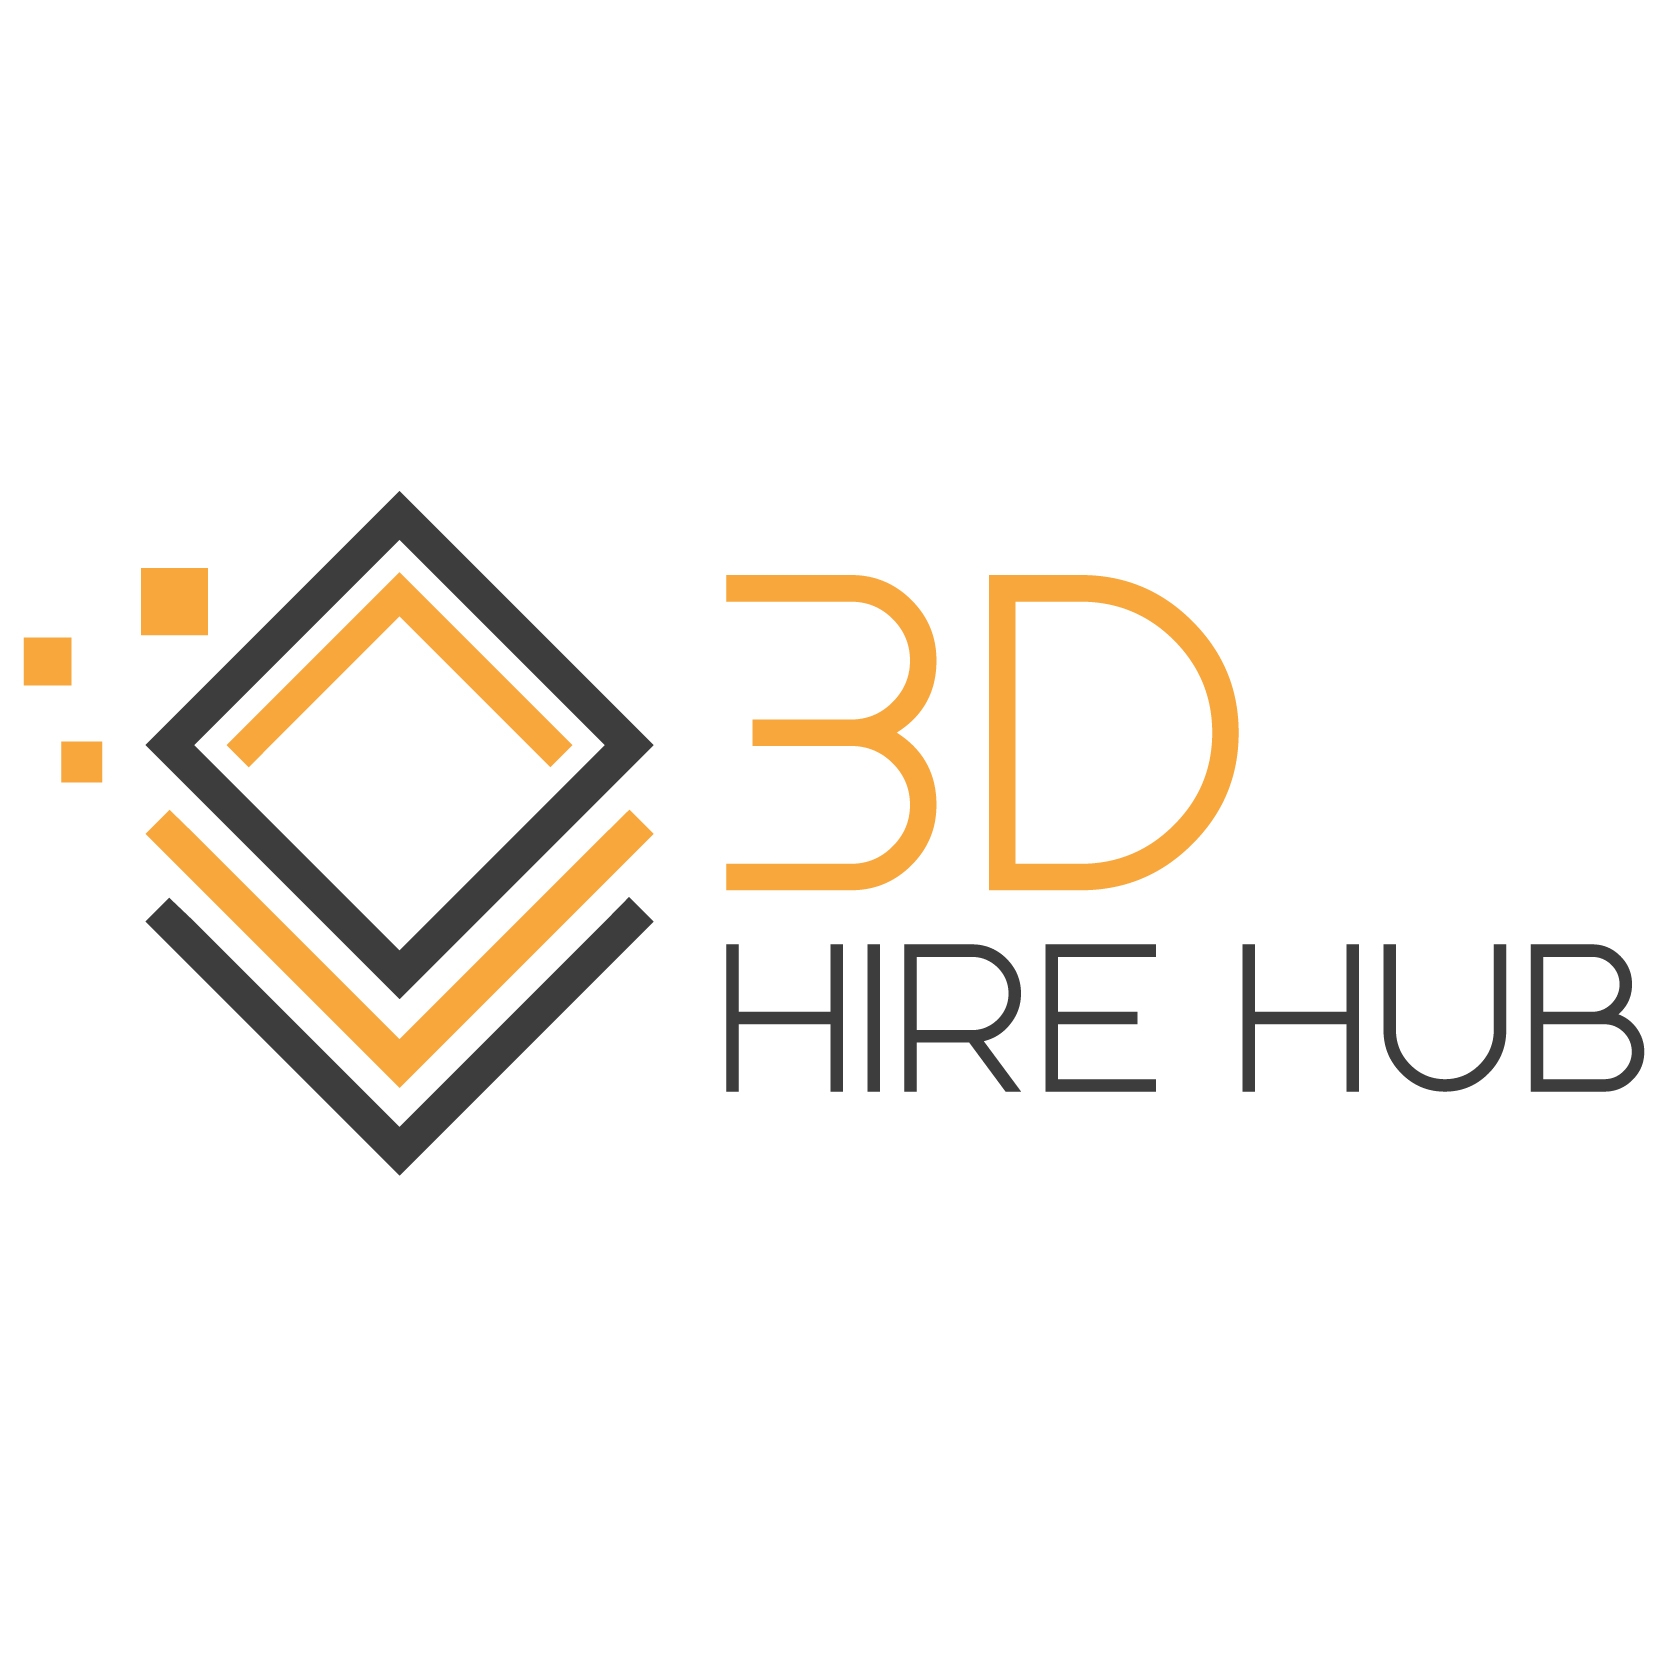 3D Hire Hub